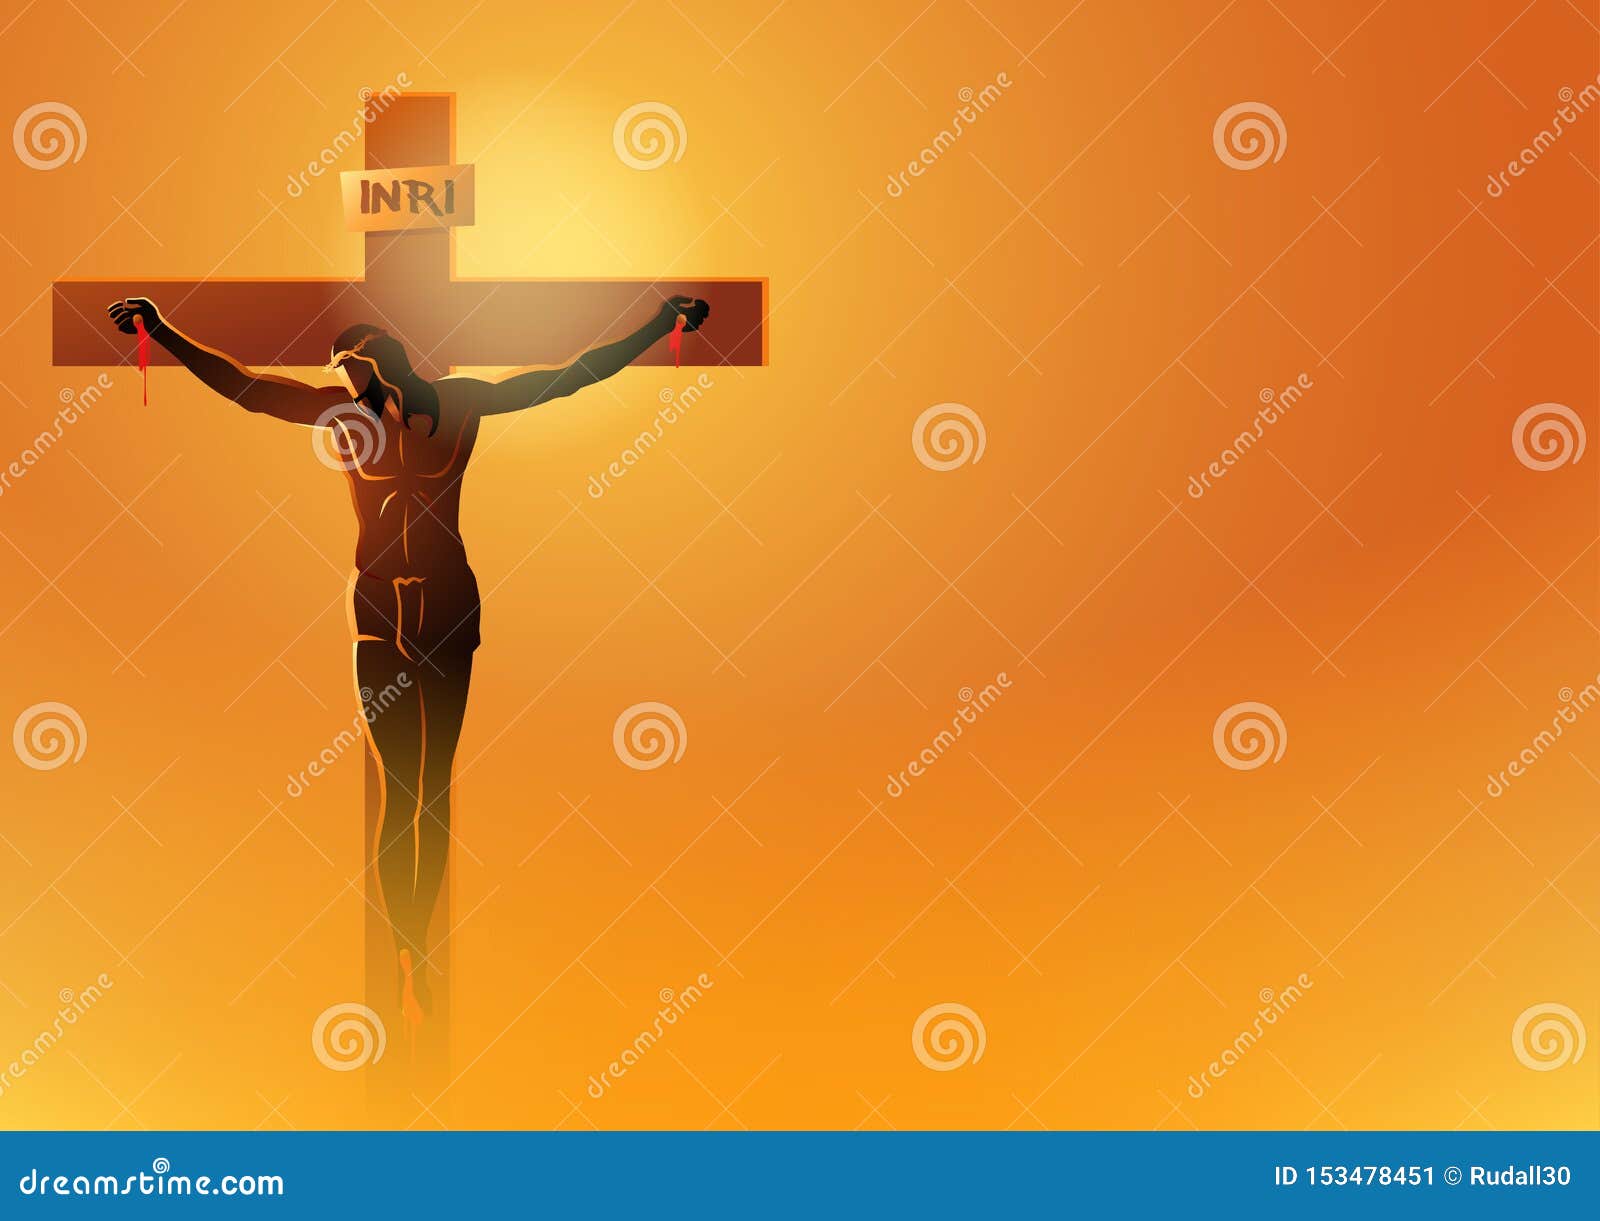 jesus dies on the cross